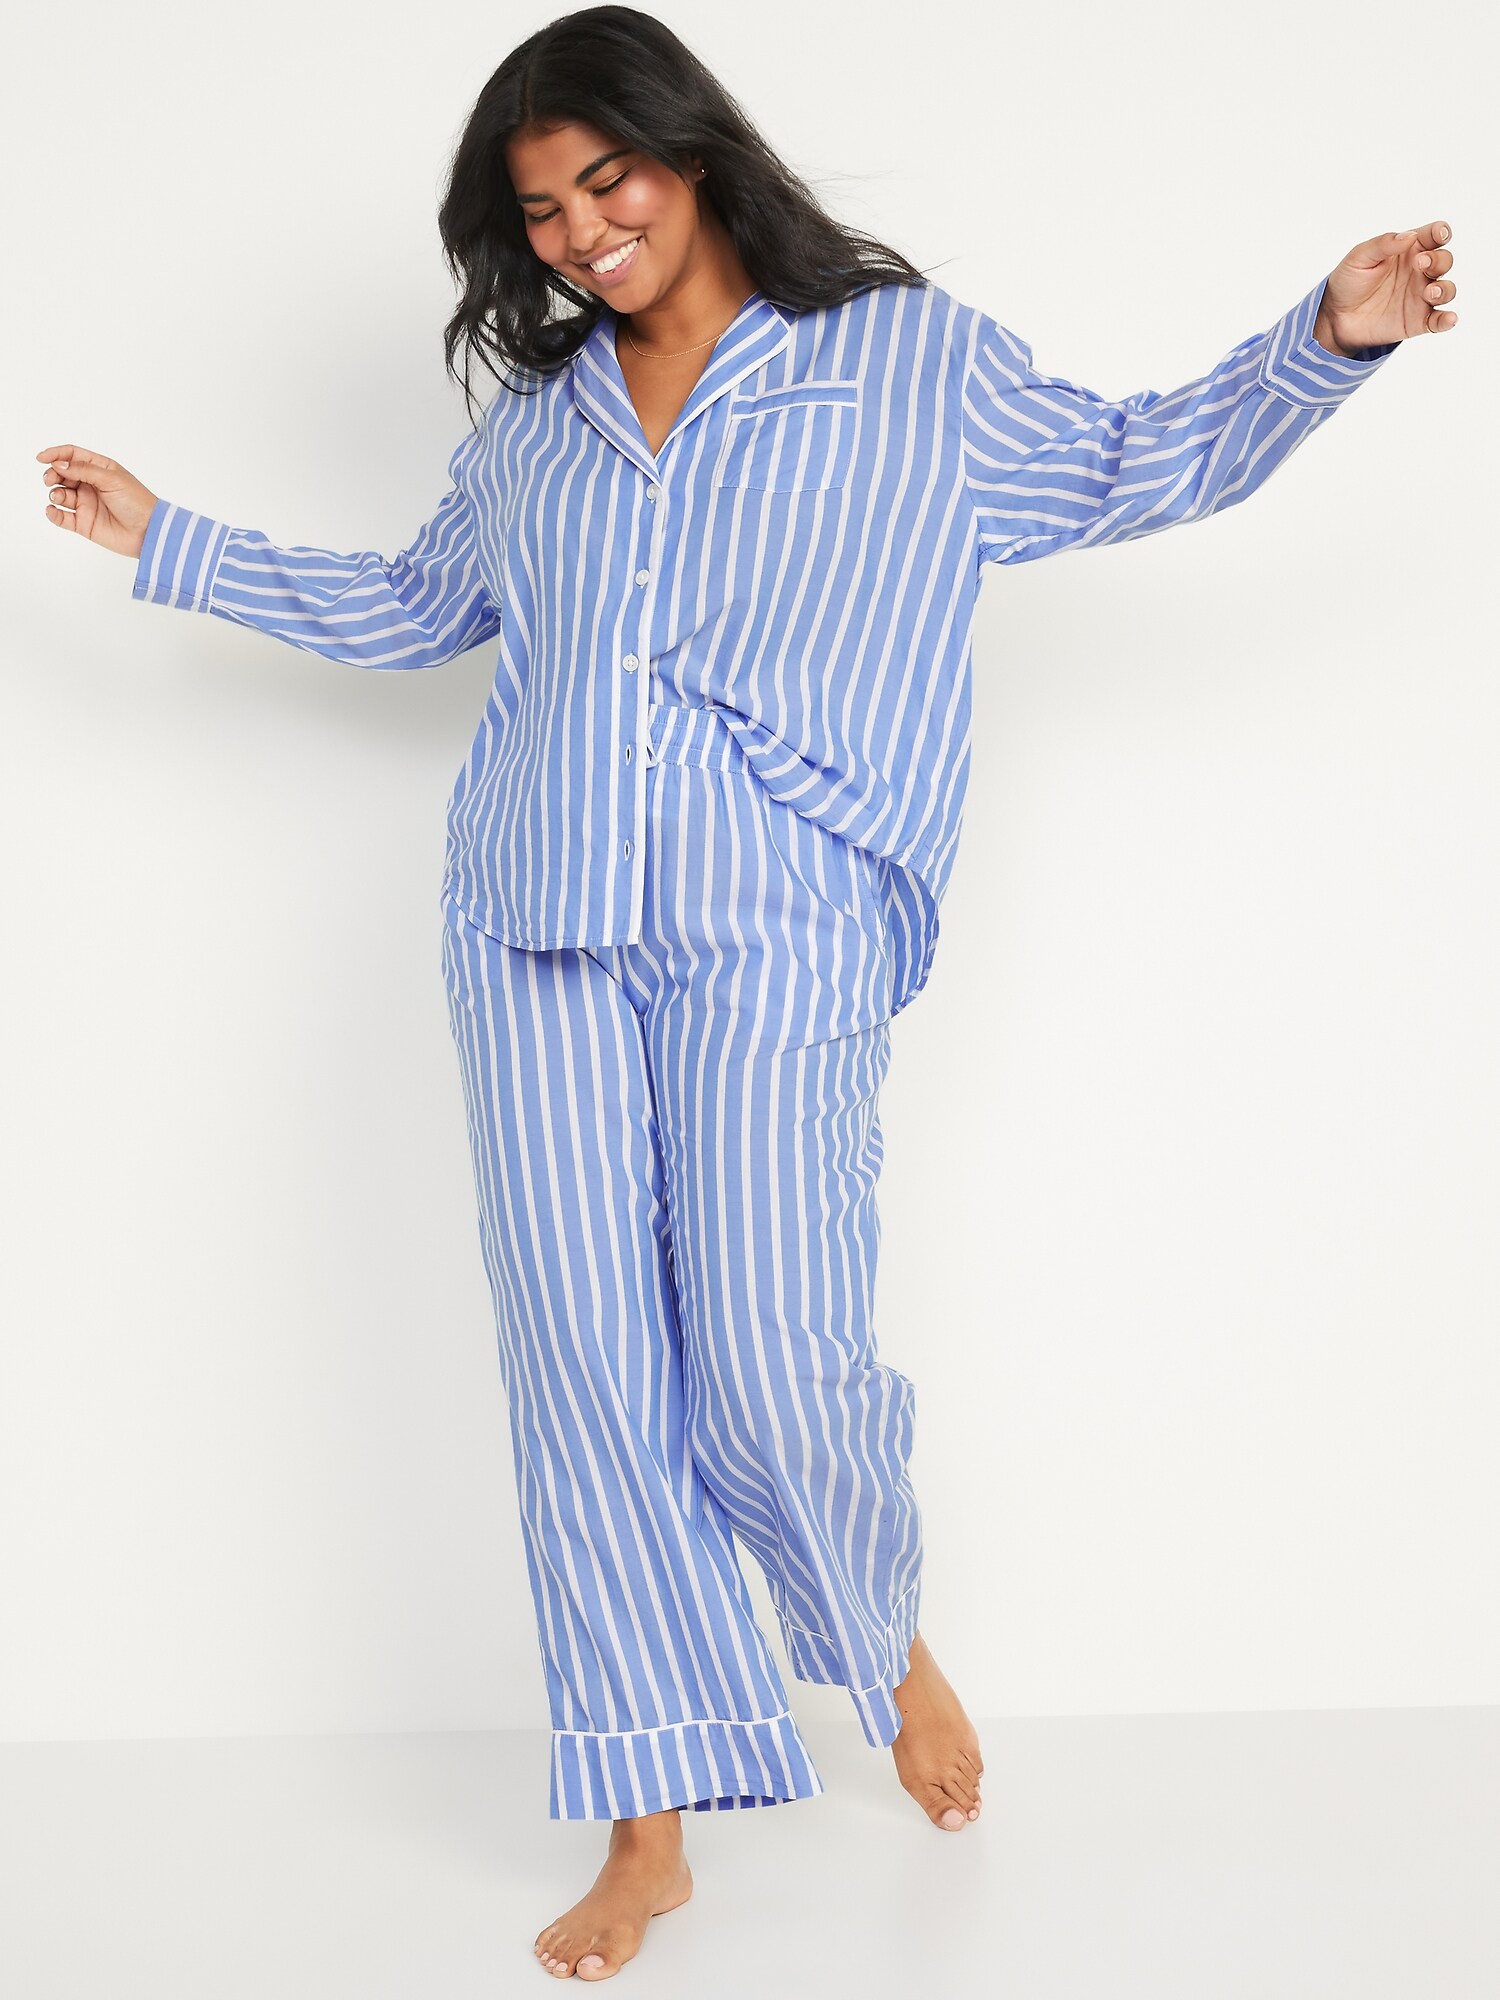 Matching Printed Pajama Set for Women | Old Navy